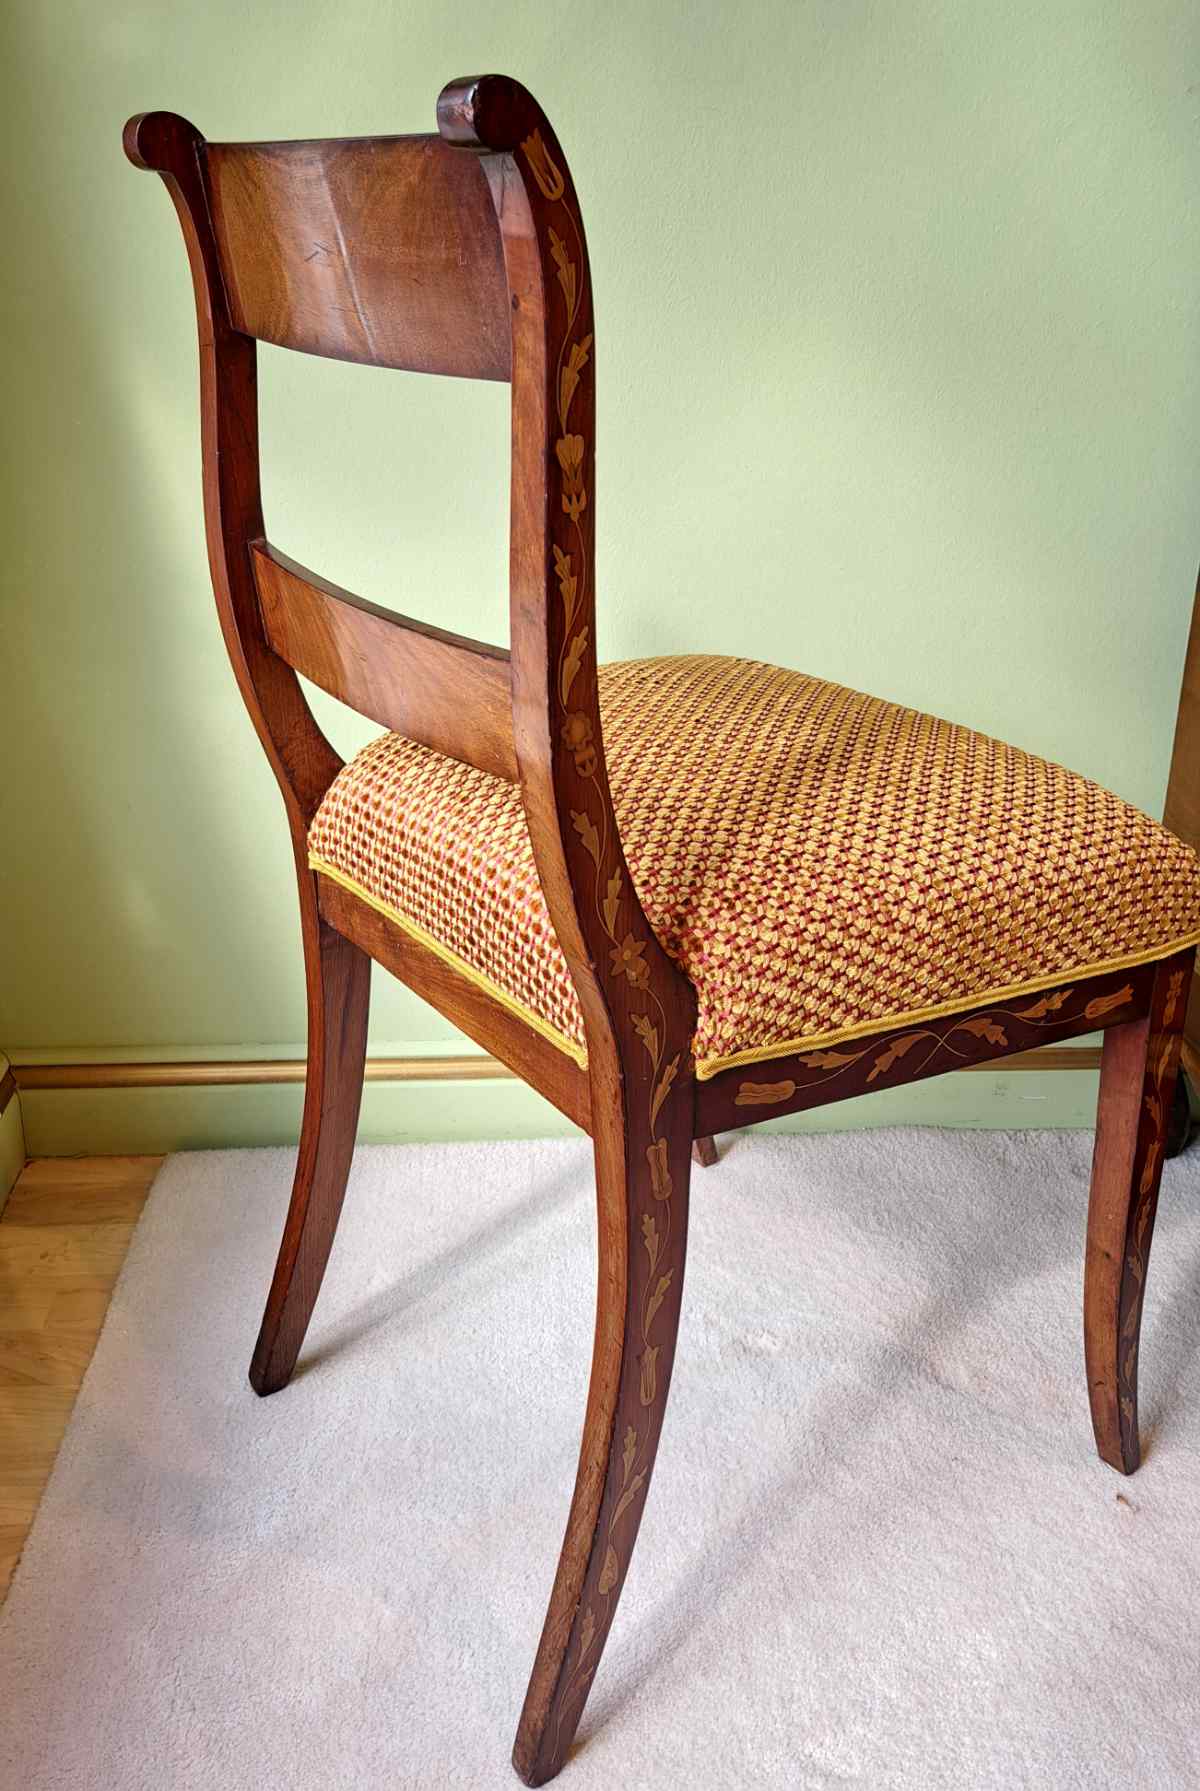 Antiker Stuhl, intarsiert, aus den Niederlanden, wohl 19. Jahrhundert, neu gepolstert und bezogen, von hinten.